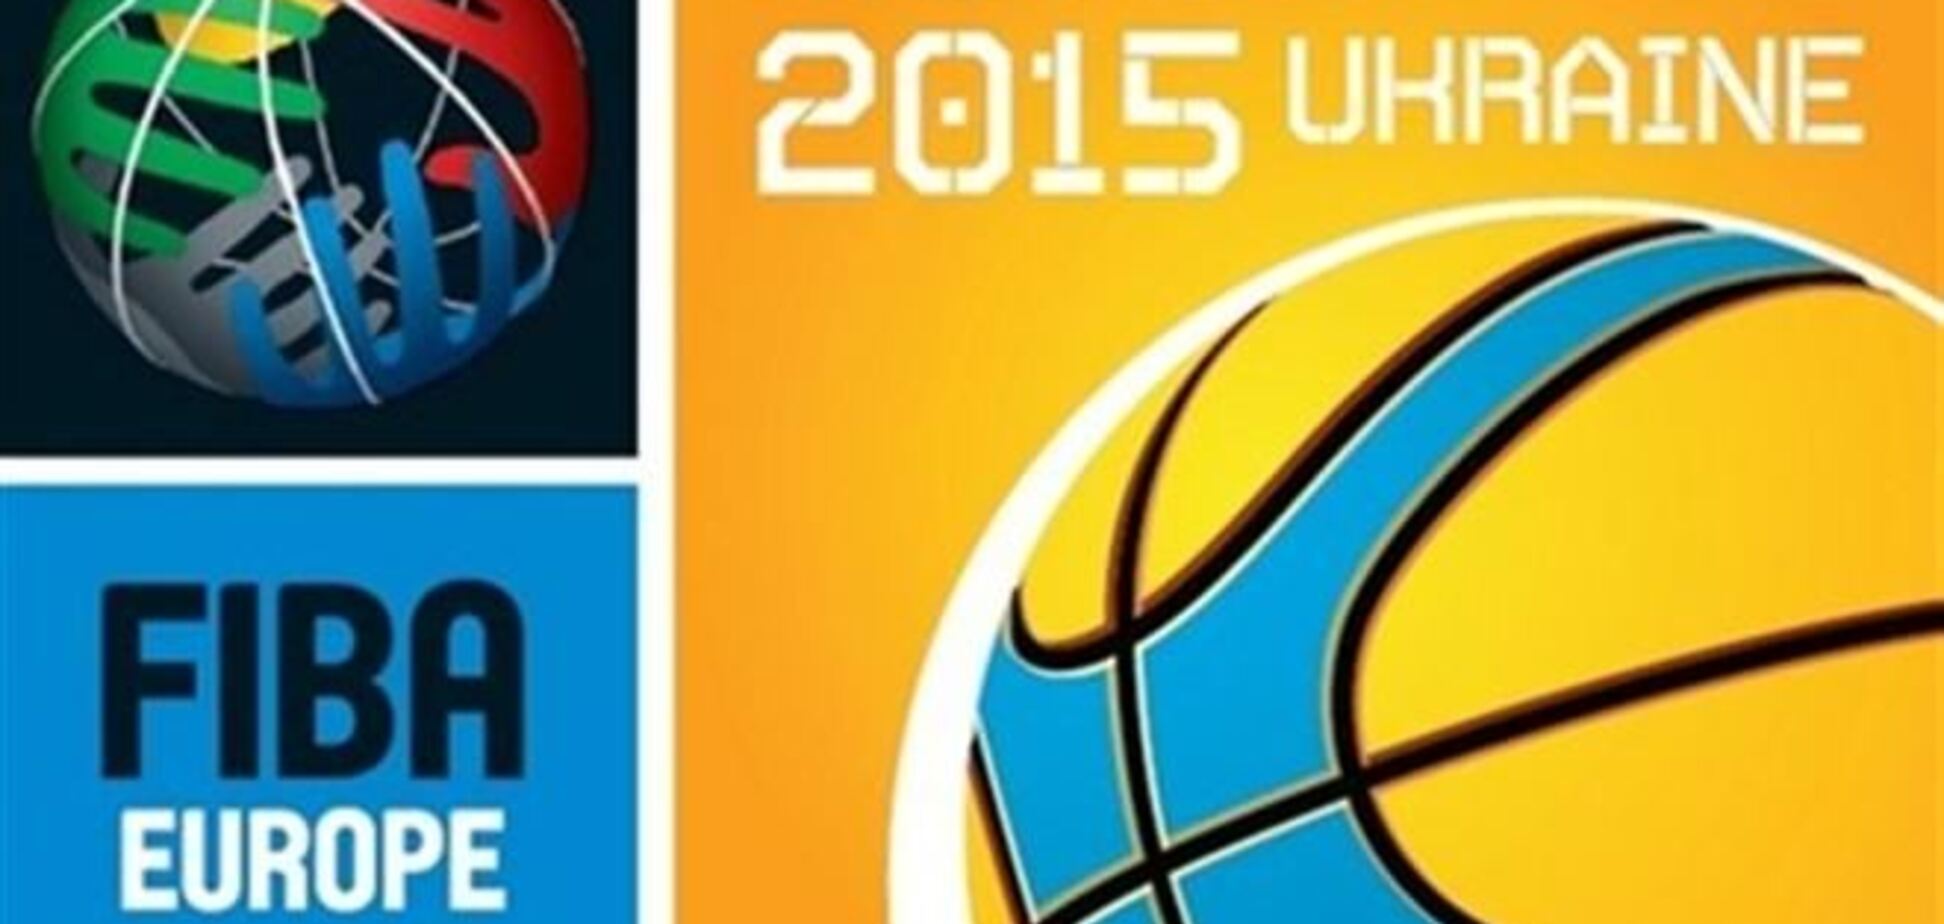 Россия готова провести Евробаскет-2015, который должен пройти в Украине